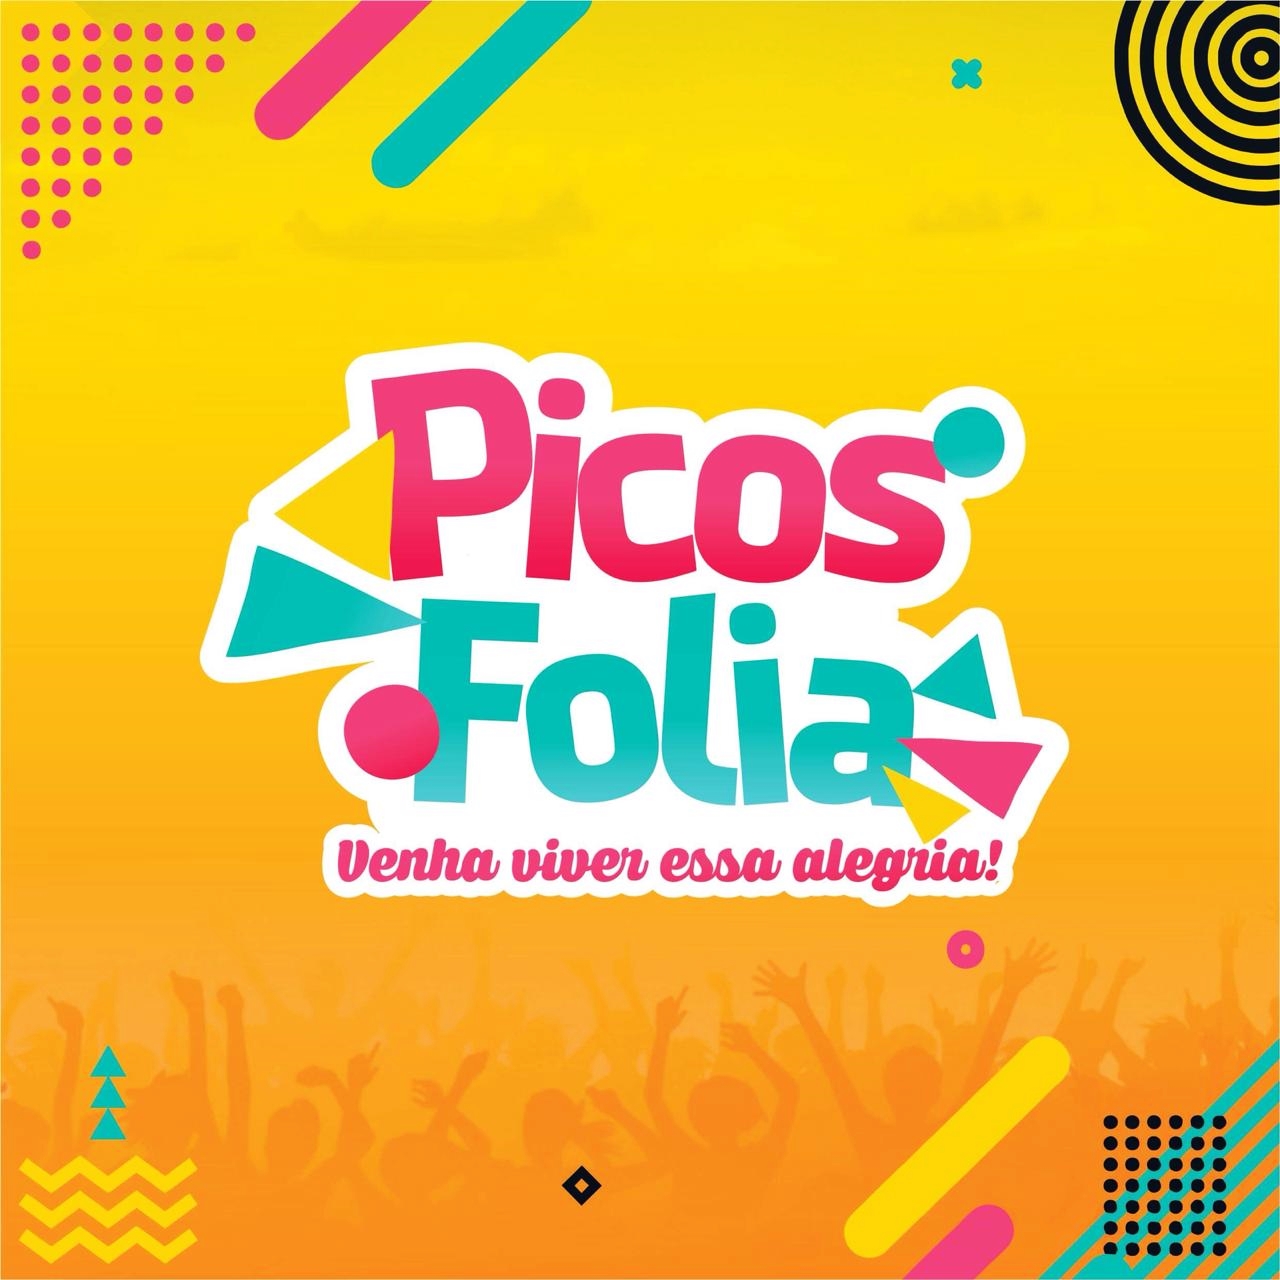 Picos Folia inicia no dia 28 de fevereiro de 2019